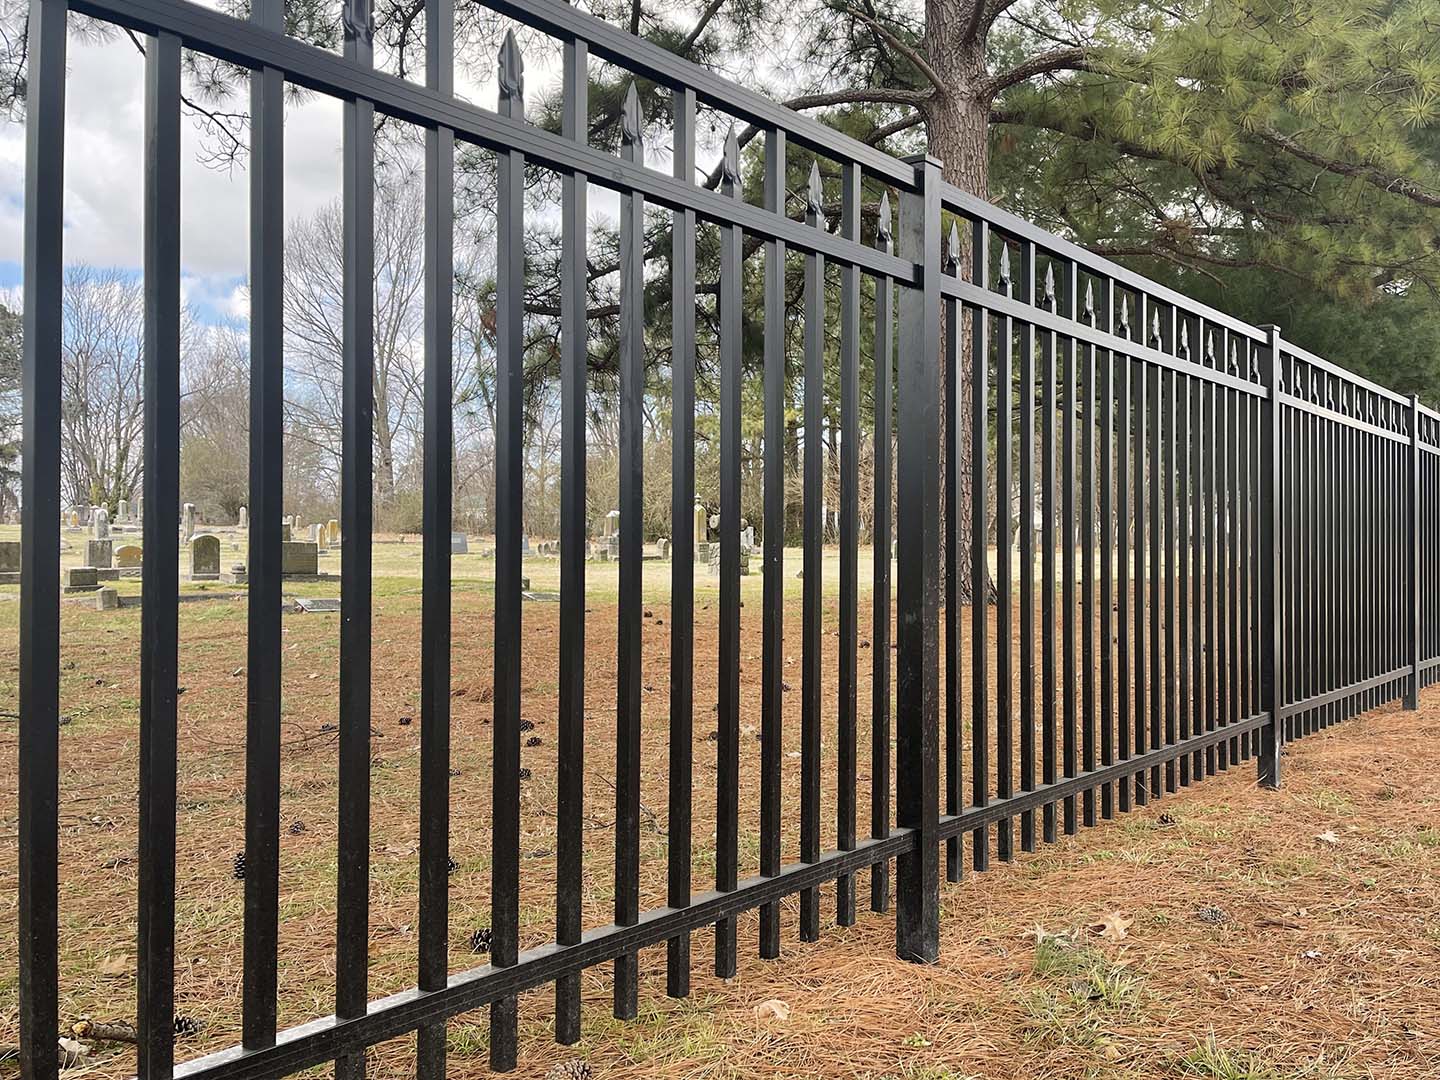  Lakeland TN Ornamental Steel Fences 